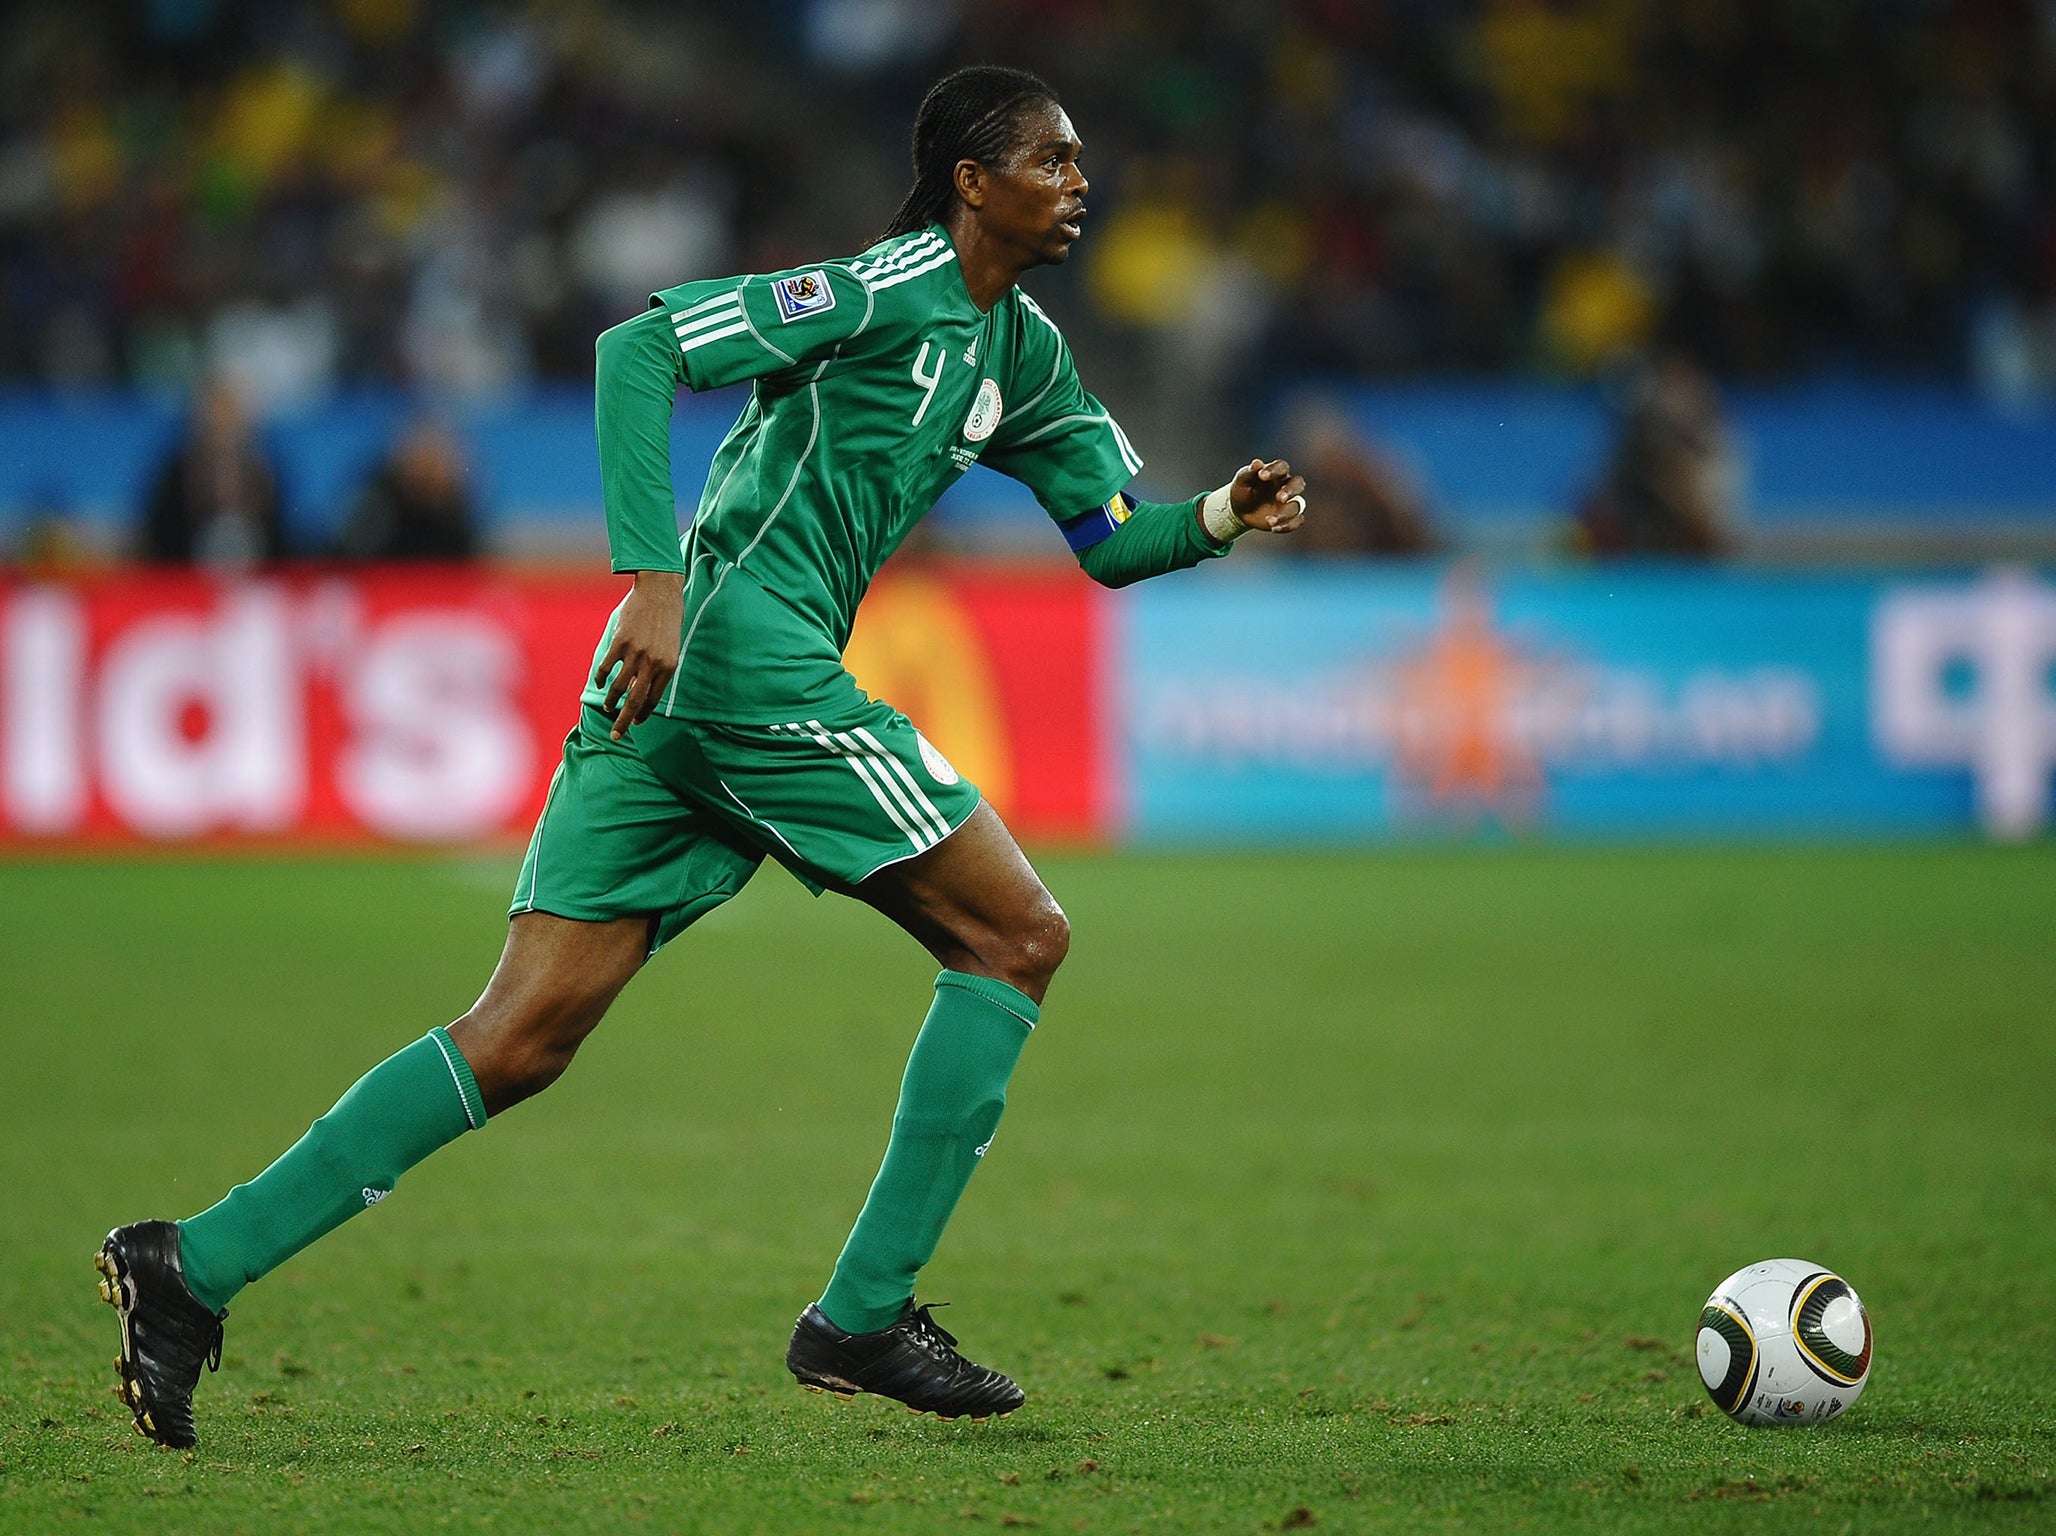 Kanu won 87 caps for Nigeria